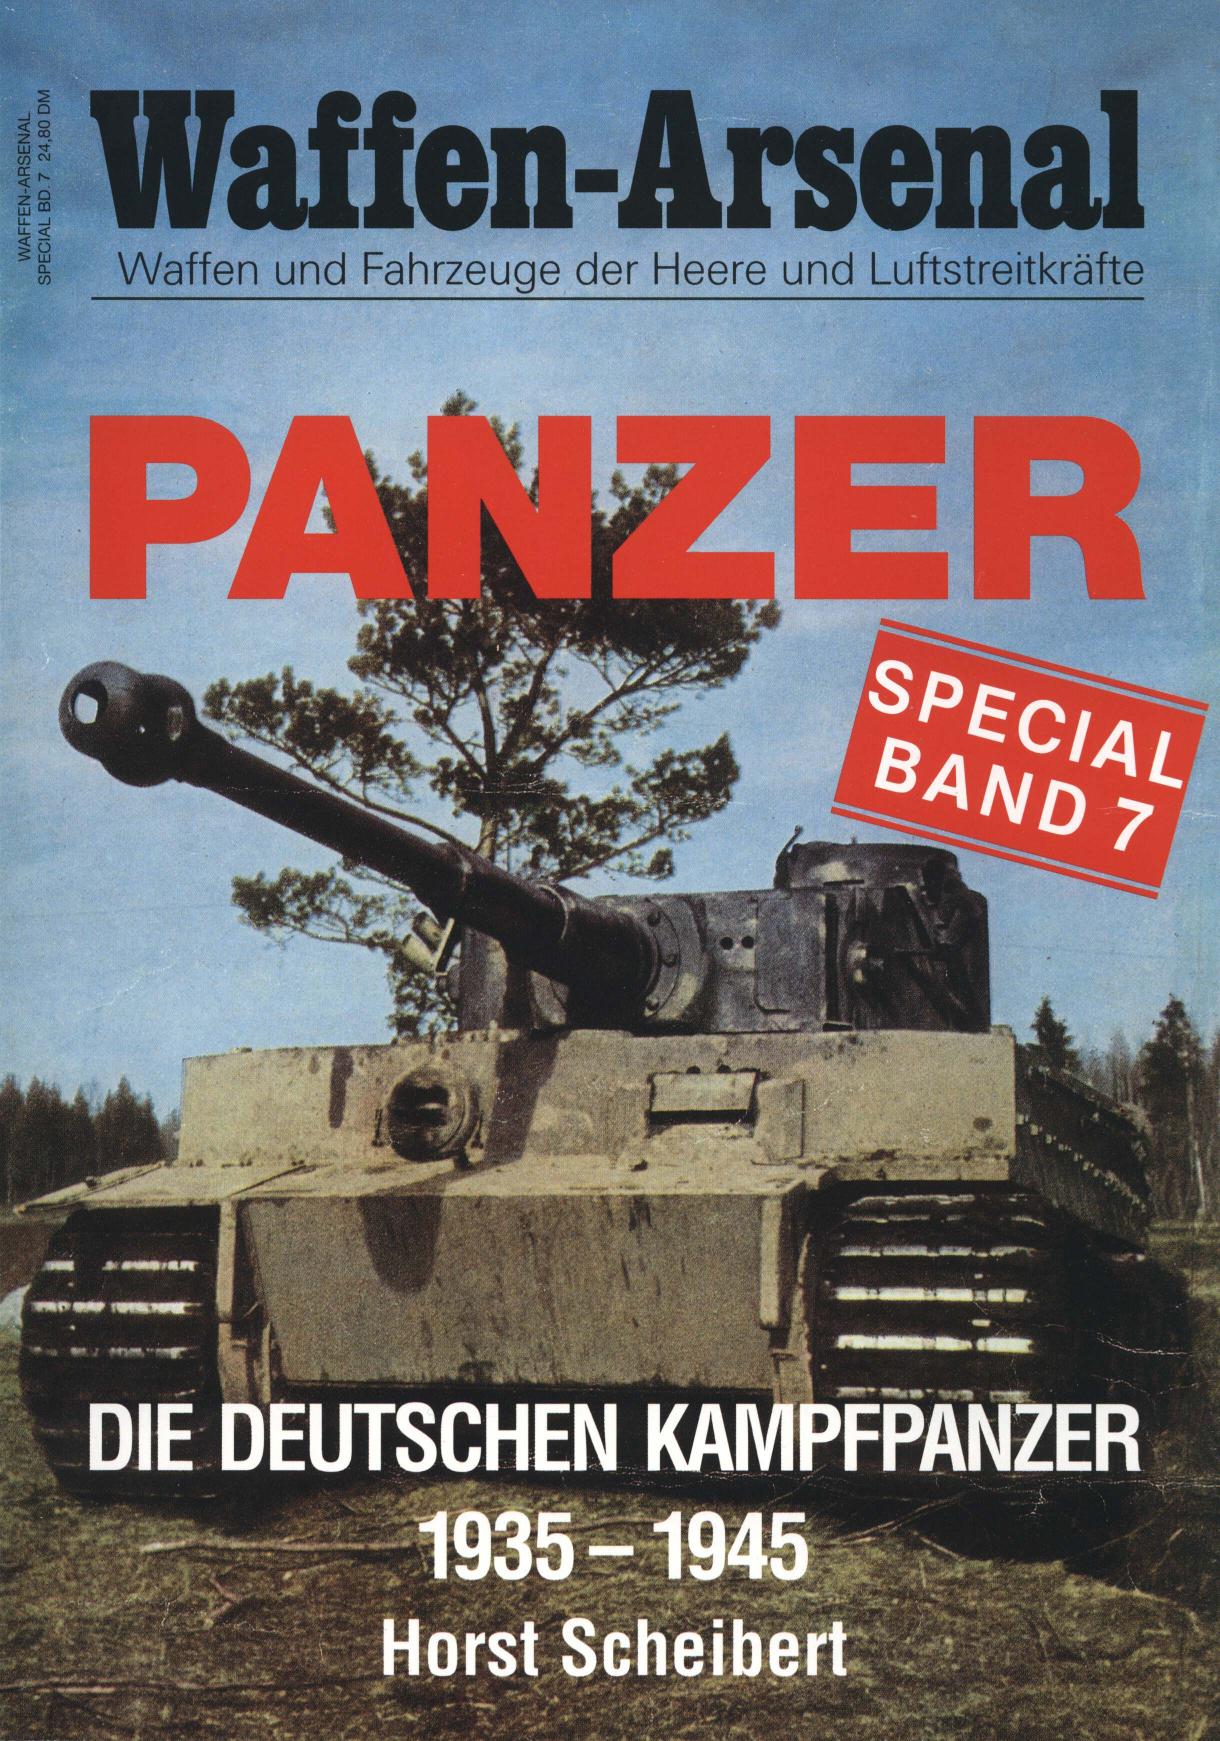 Panzer die deutschen Kampfpanzer 1935 - 1945